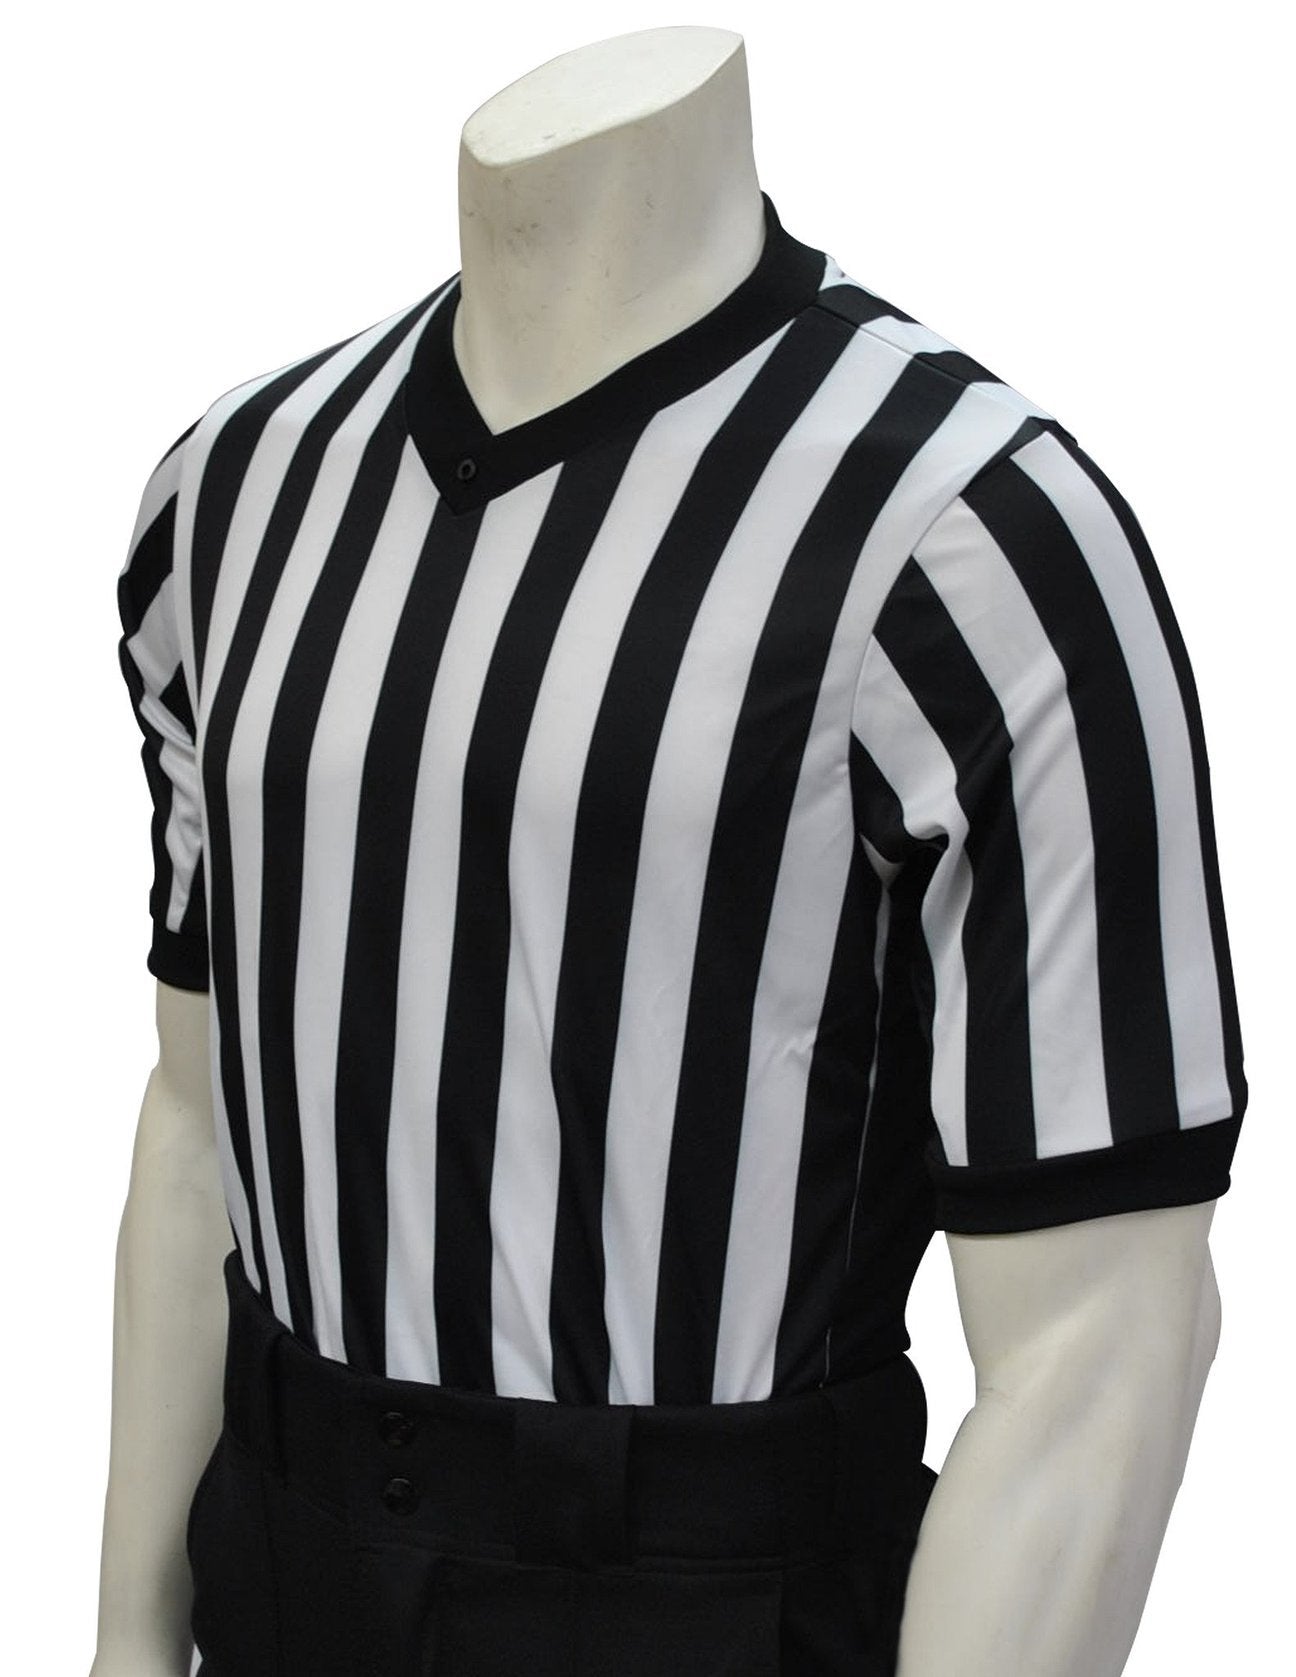 Smitty Grey V-Neck Performance Mesh Referee Shirt with Black